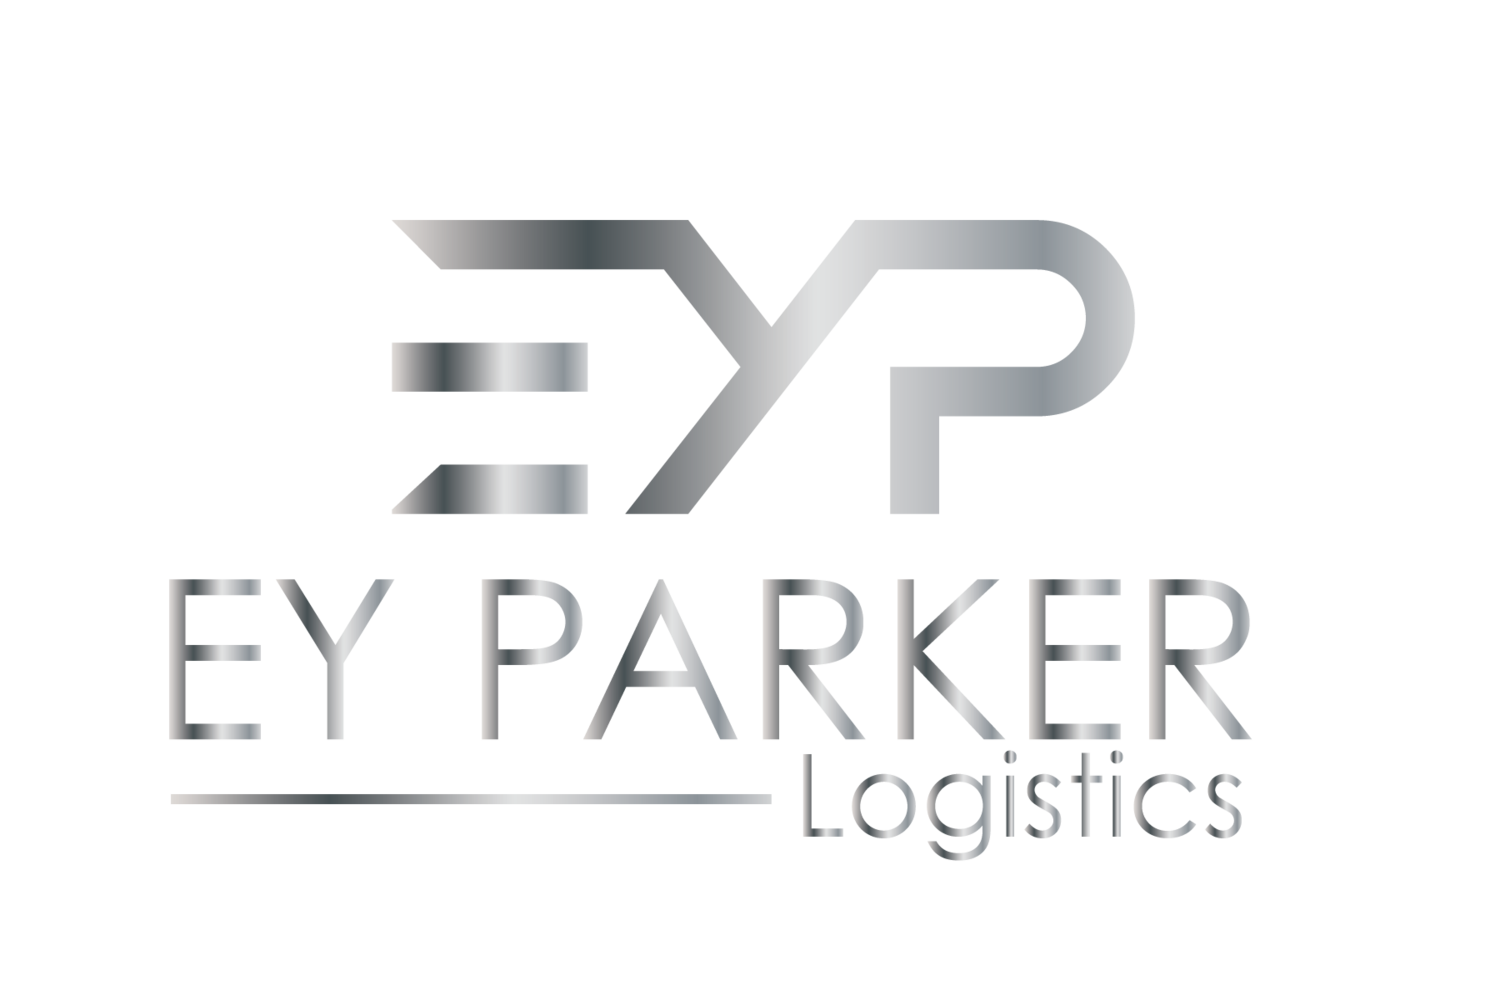 EY Parker Logistics